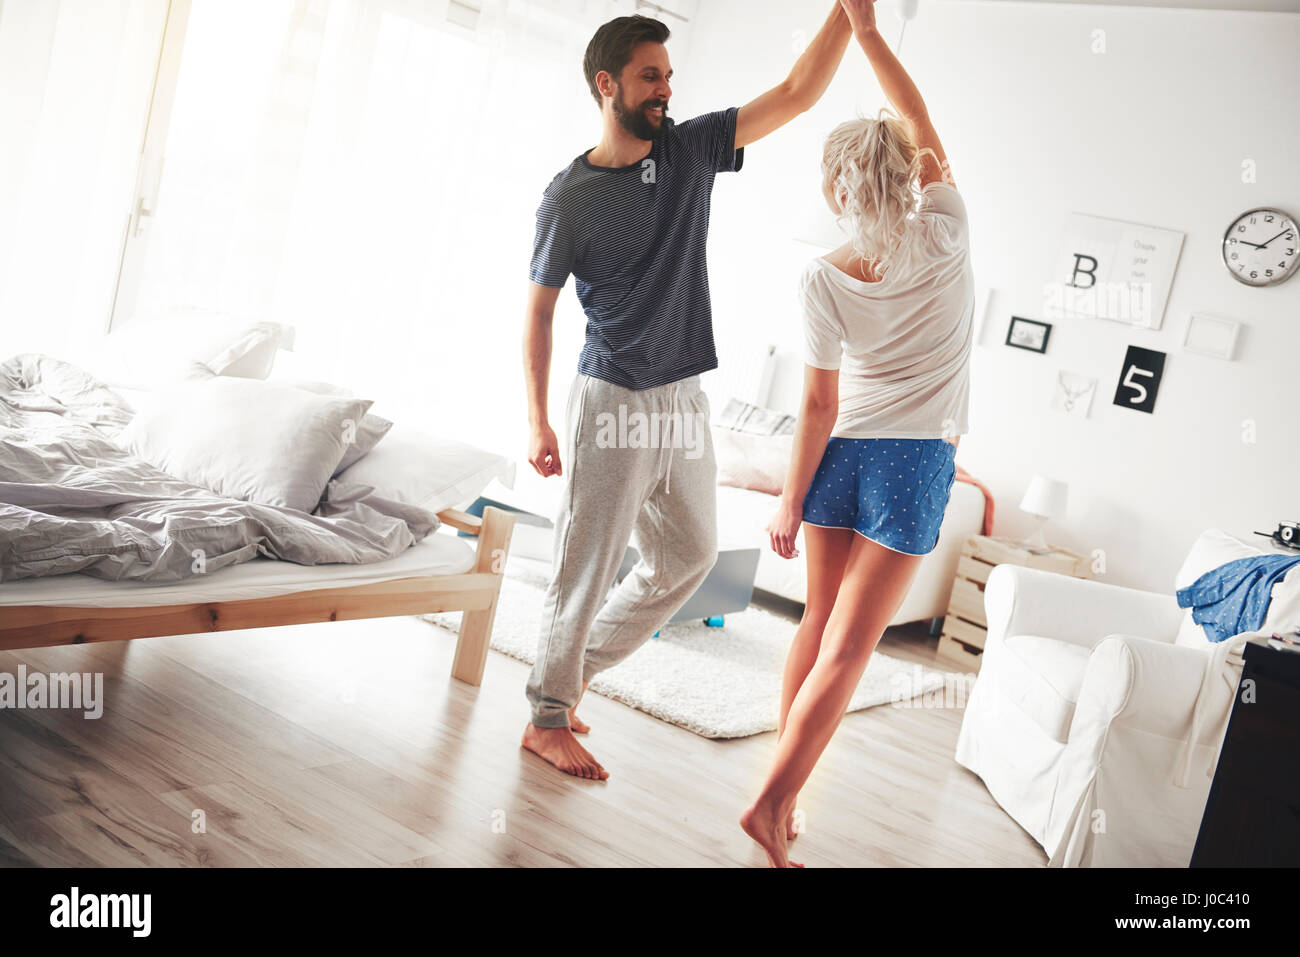 Couple in bedroom, wearing pyjamas, dancing Stock Photo